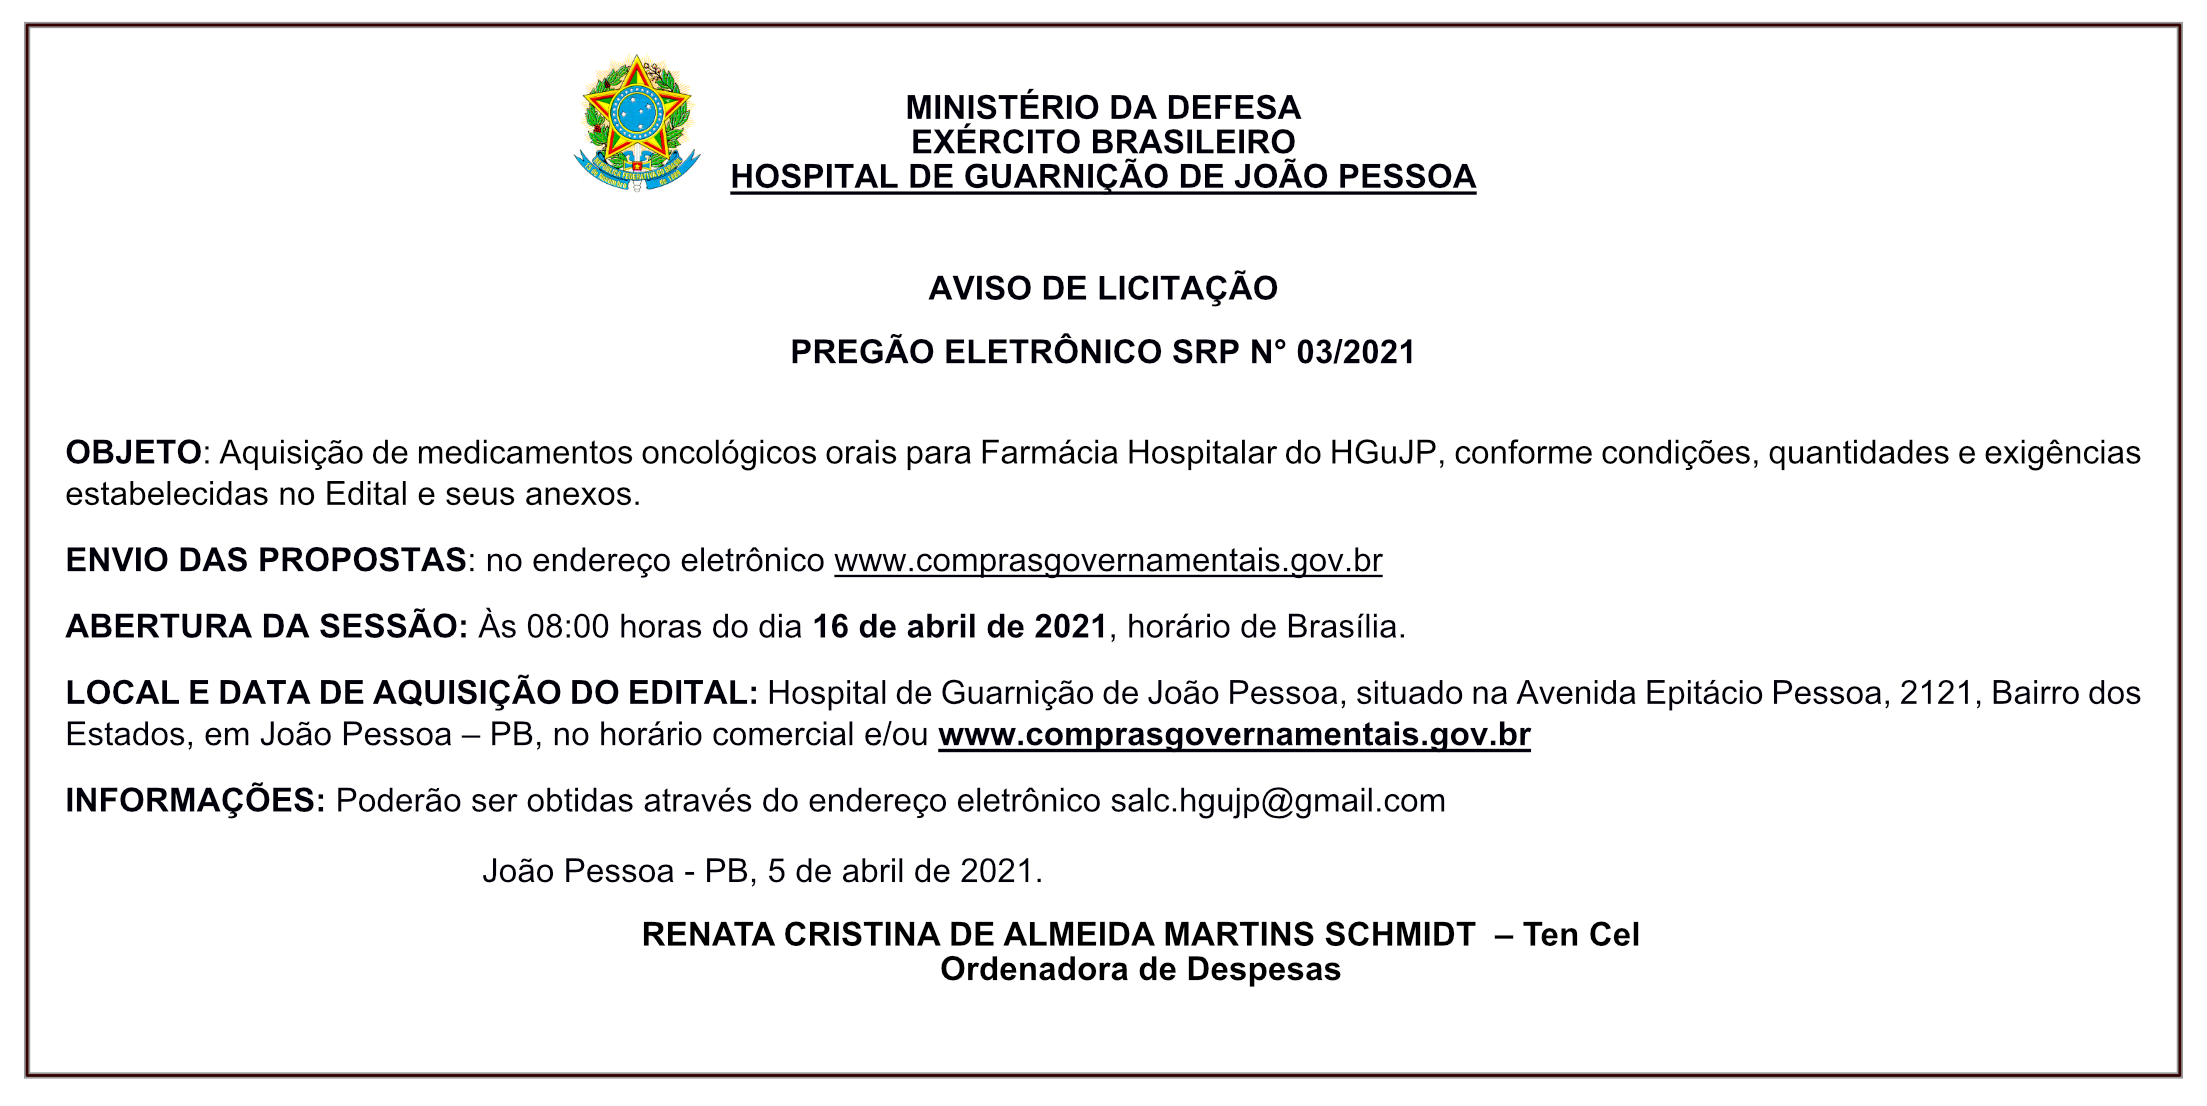 HOSPITAL DE GUARNIÇÃO DE JOÃO PESSOA – AVISO DE LICITAÇÃO – PREGÃO ELETRÔNICO SRP N° 03/2021